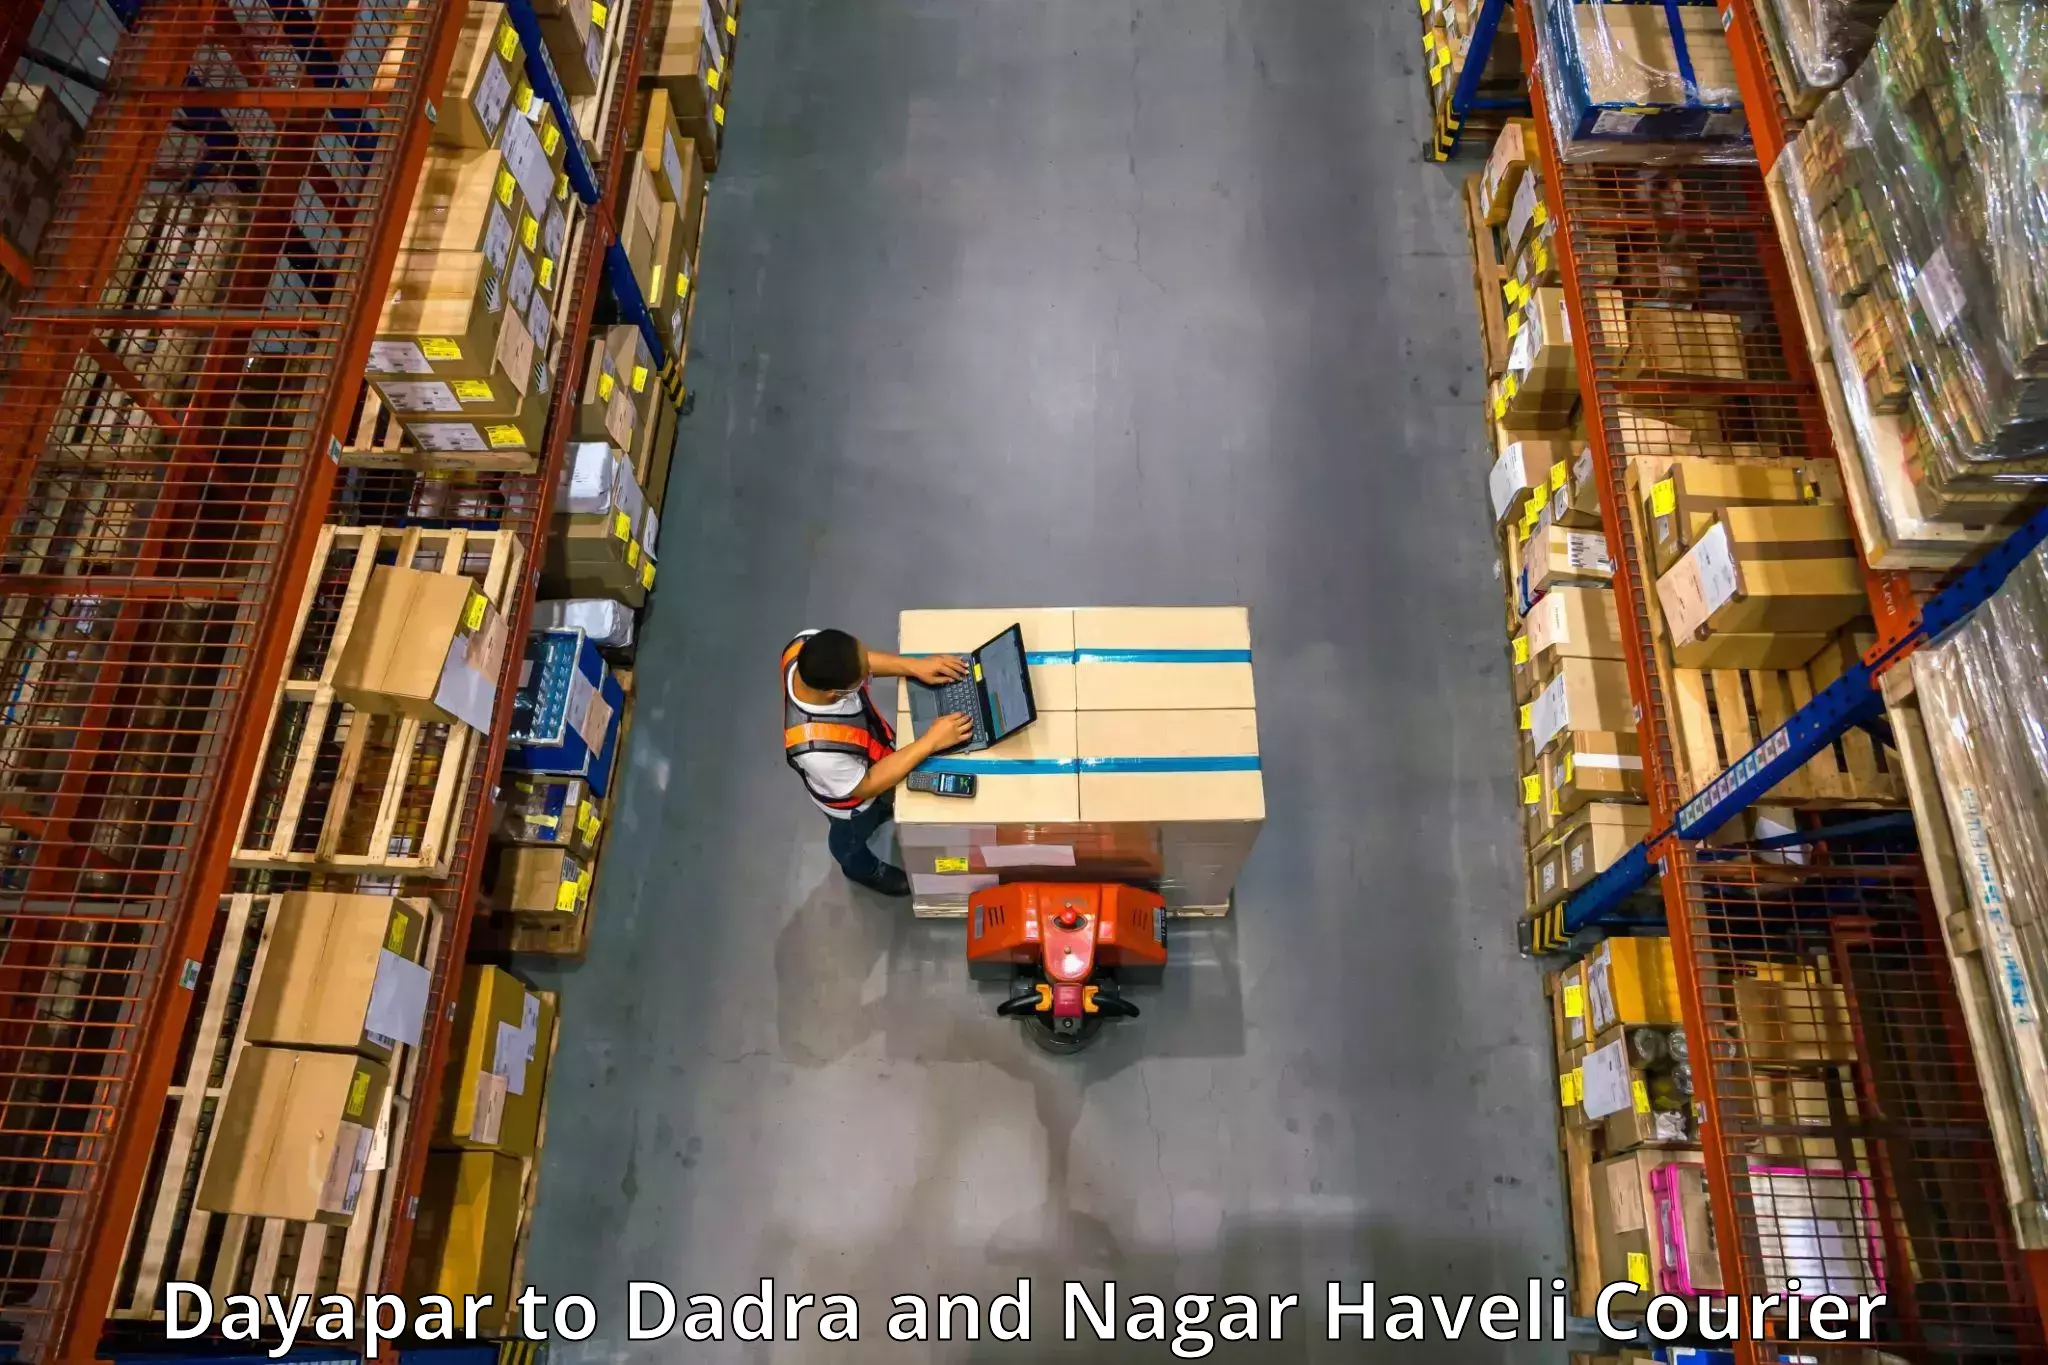 Furniture transport experts Dayapar to Dadra and Nagar Haveli